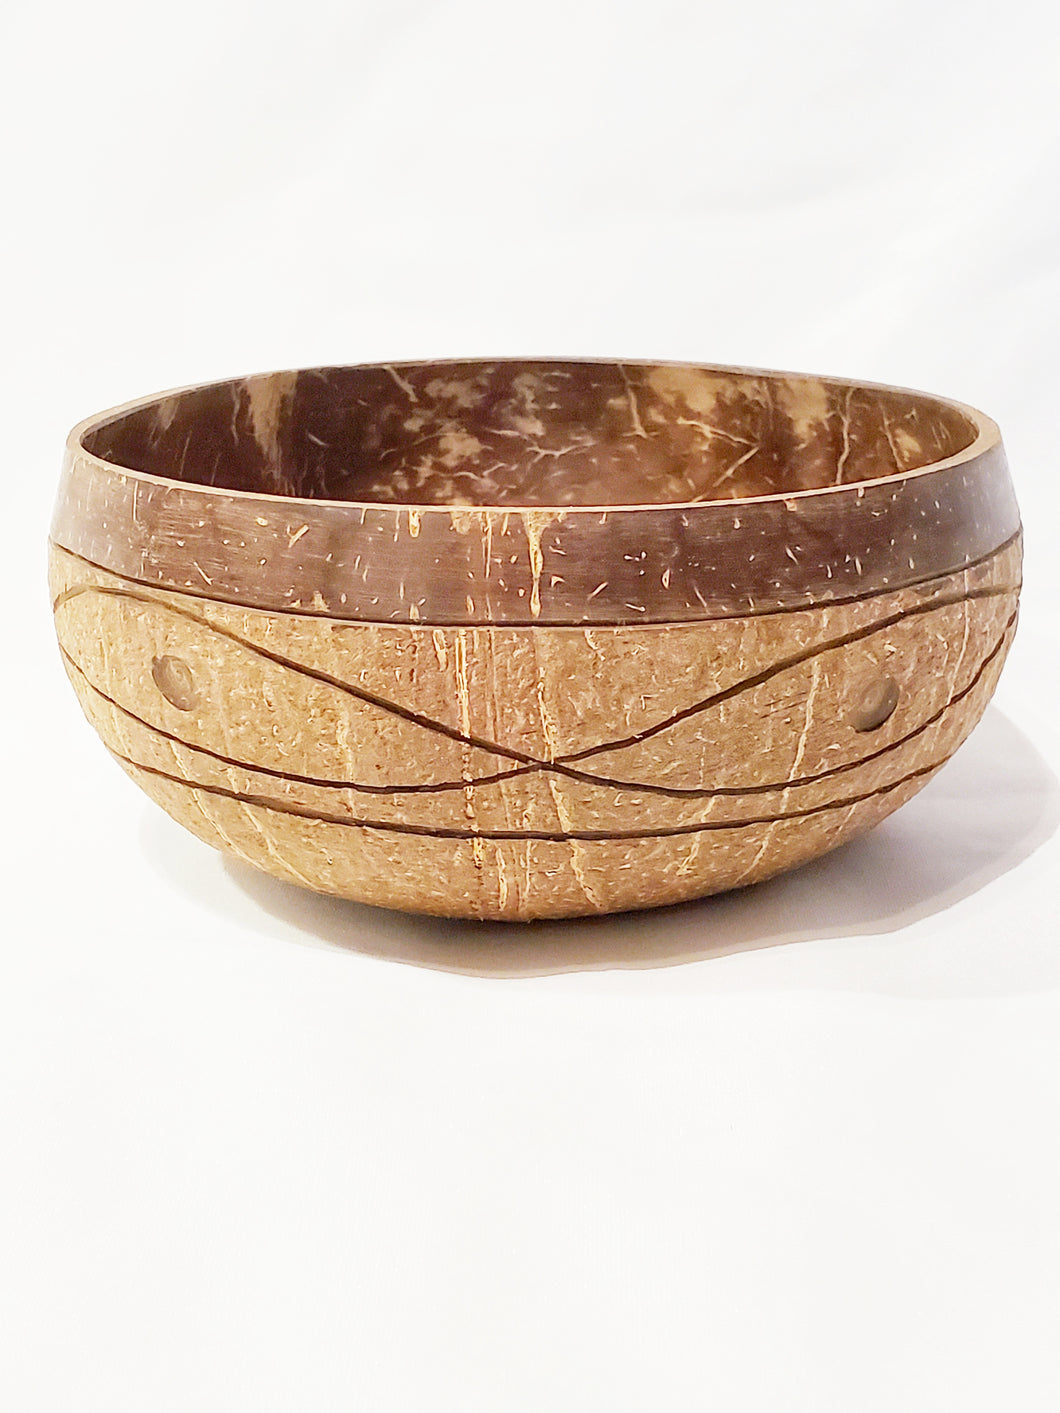 Cosmos Coconut Bowl (13-15 cm diameter)